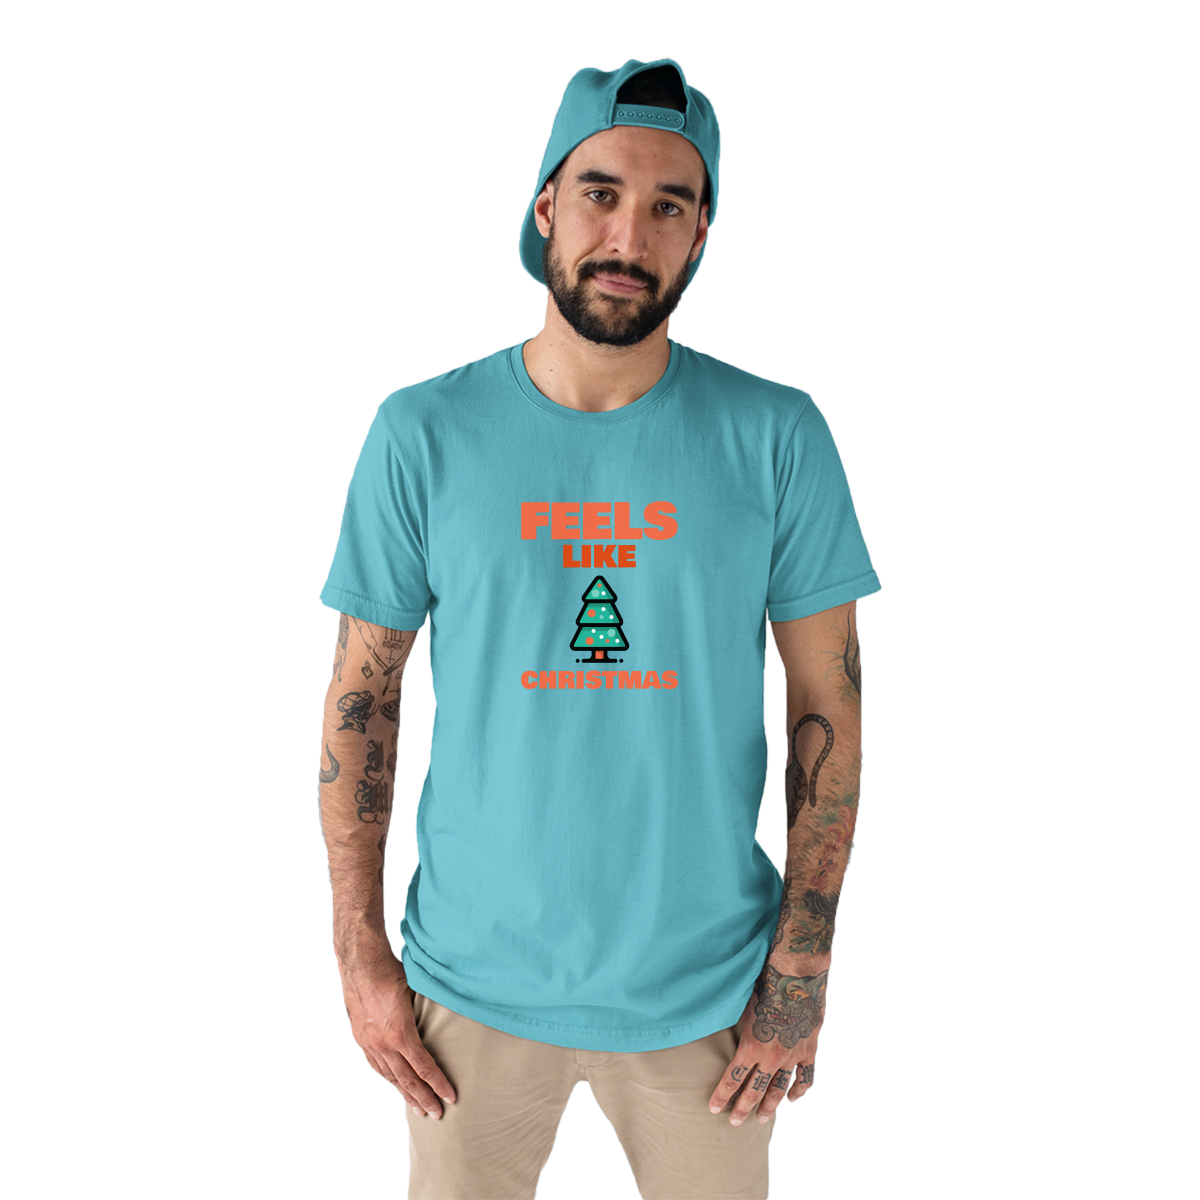 Feels Like Christmas Men's T-shirt | Turquoise